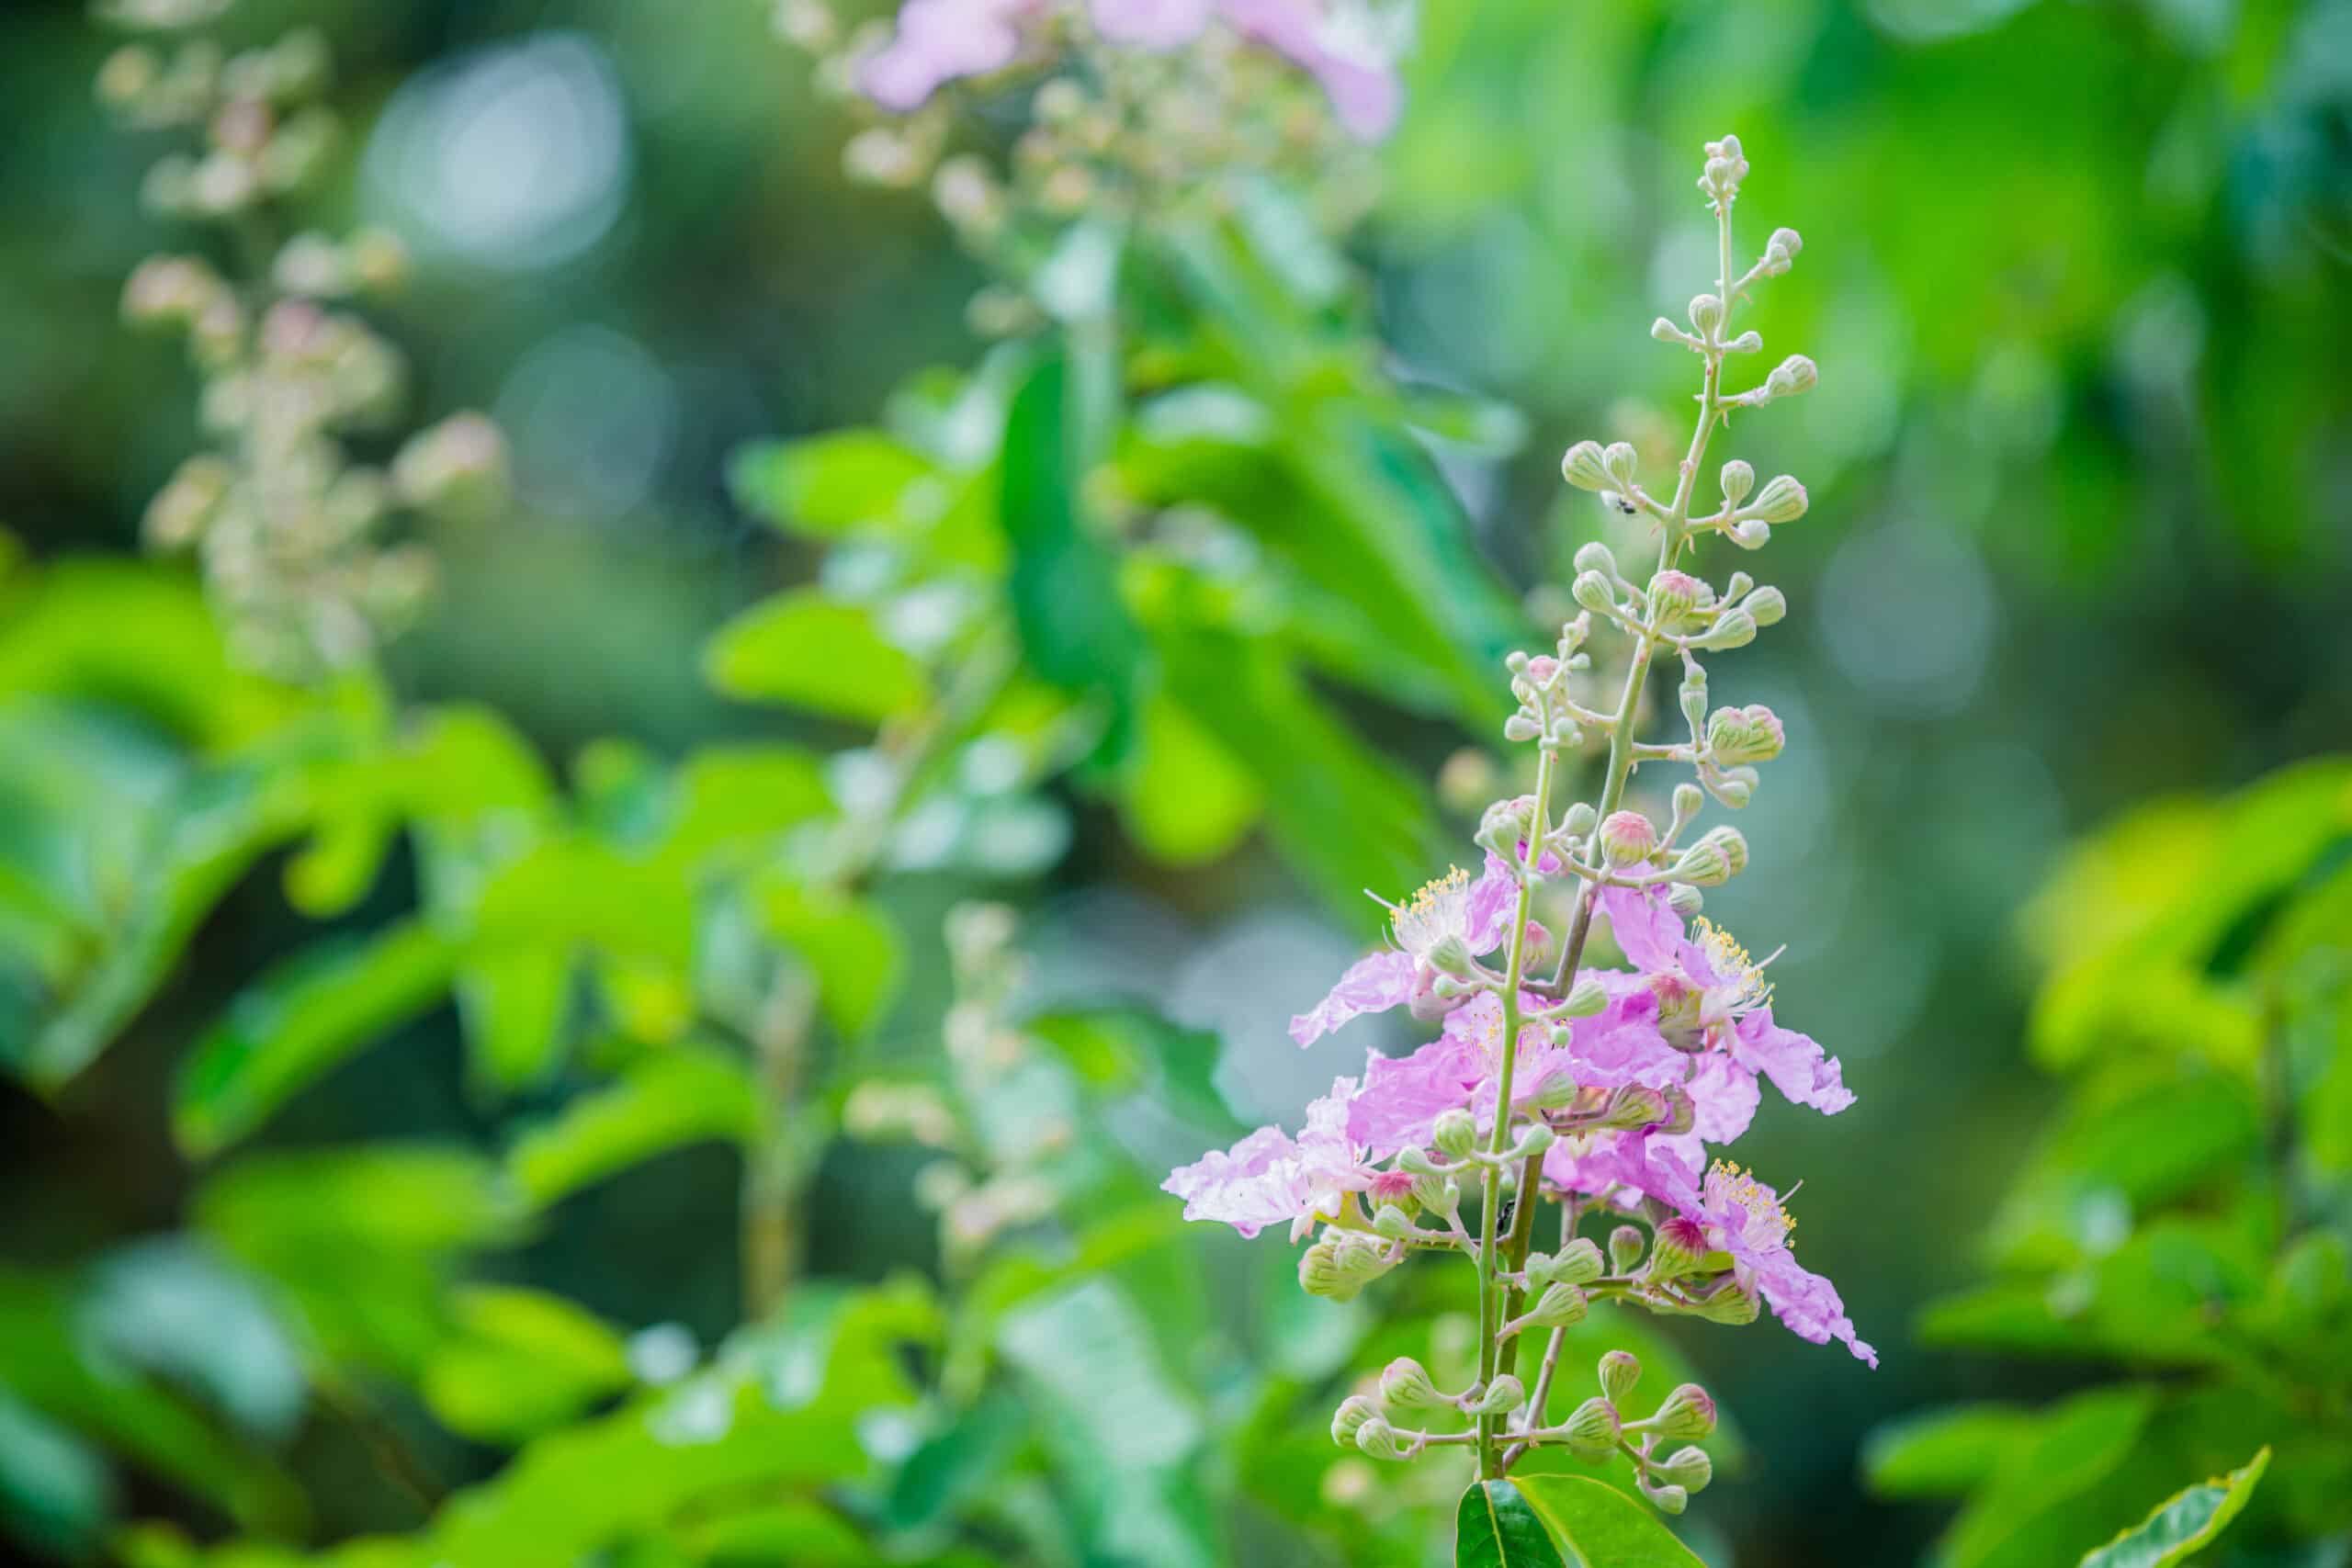  Индиго: научете повече за това растение, широко използвано като естествен оцветител